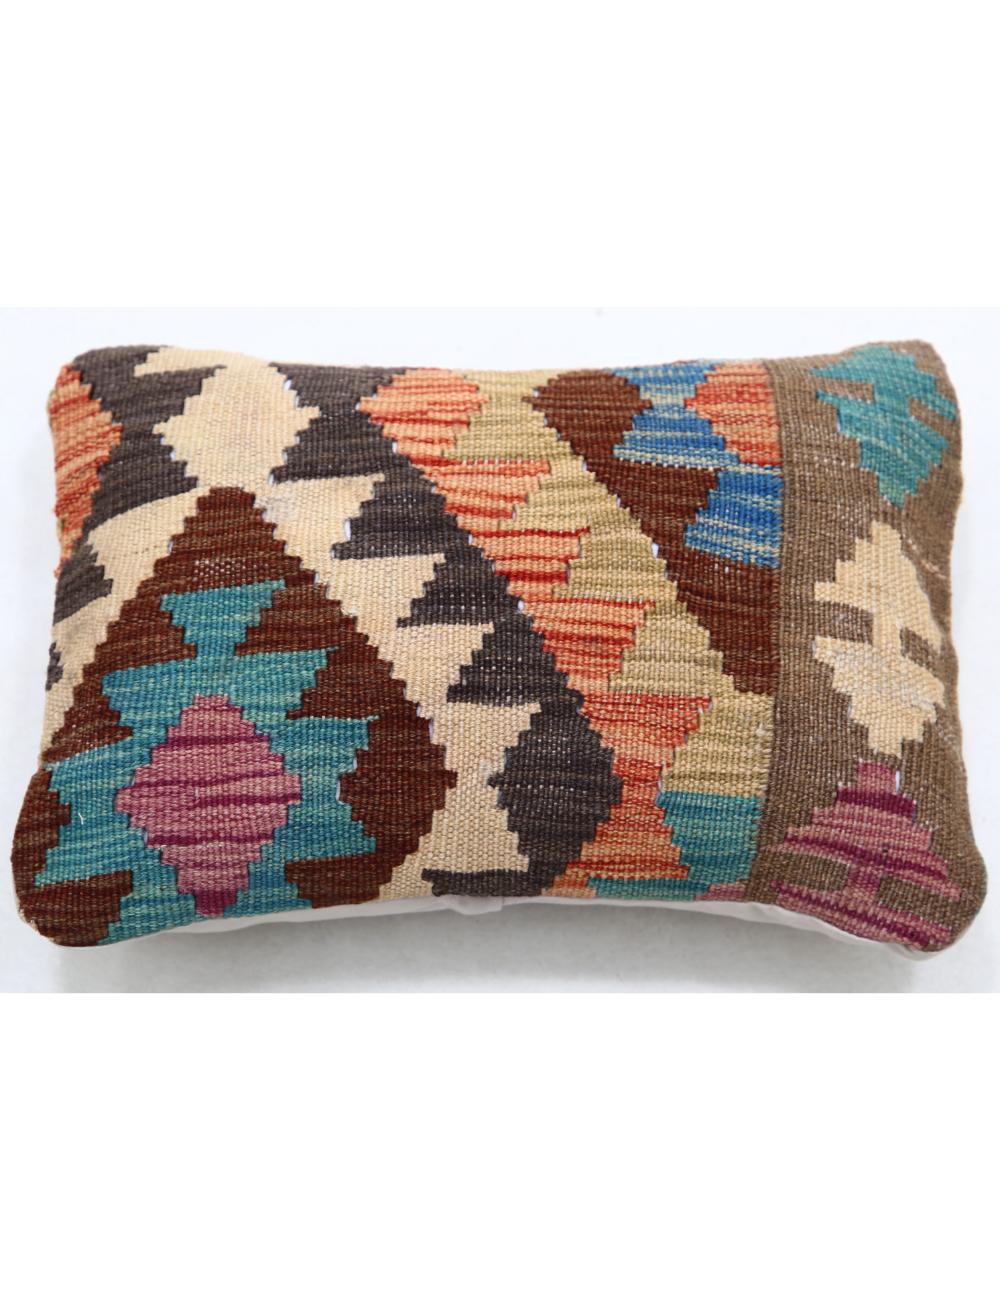 Hand Woven Tribal Multi Color Geometric Wool Pillow - 1&#39;0&#39;&#39; x 1&#39;5&#39;&#39; Arteverk Arteverk Rugs